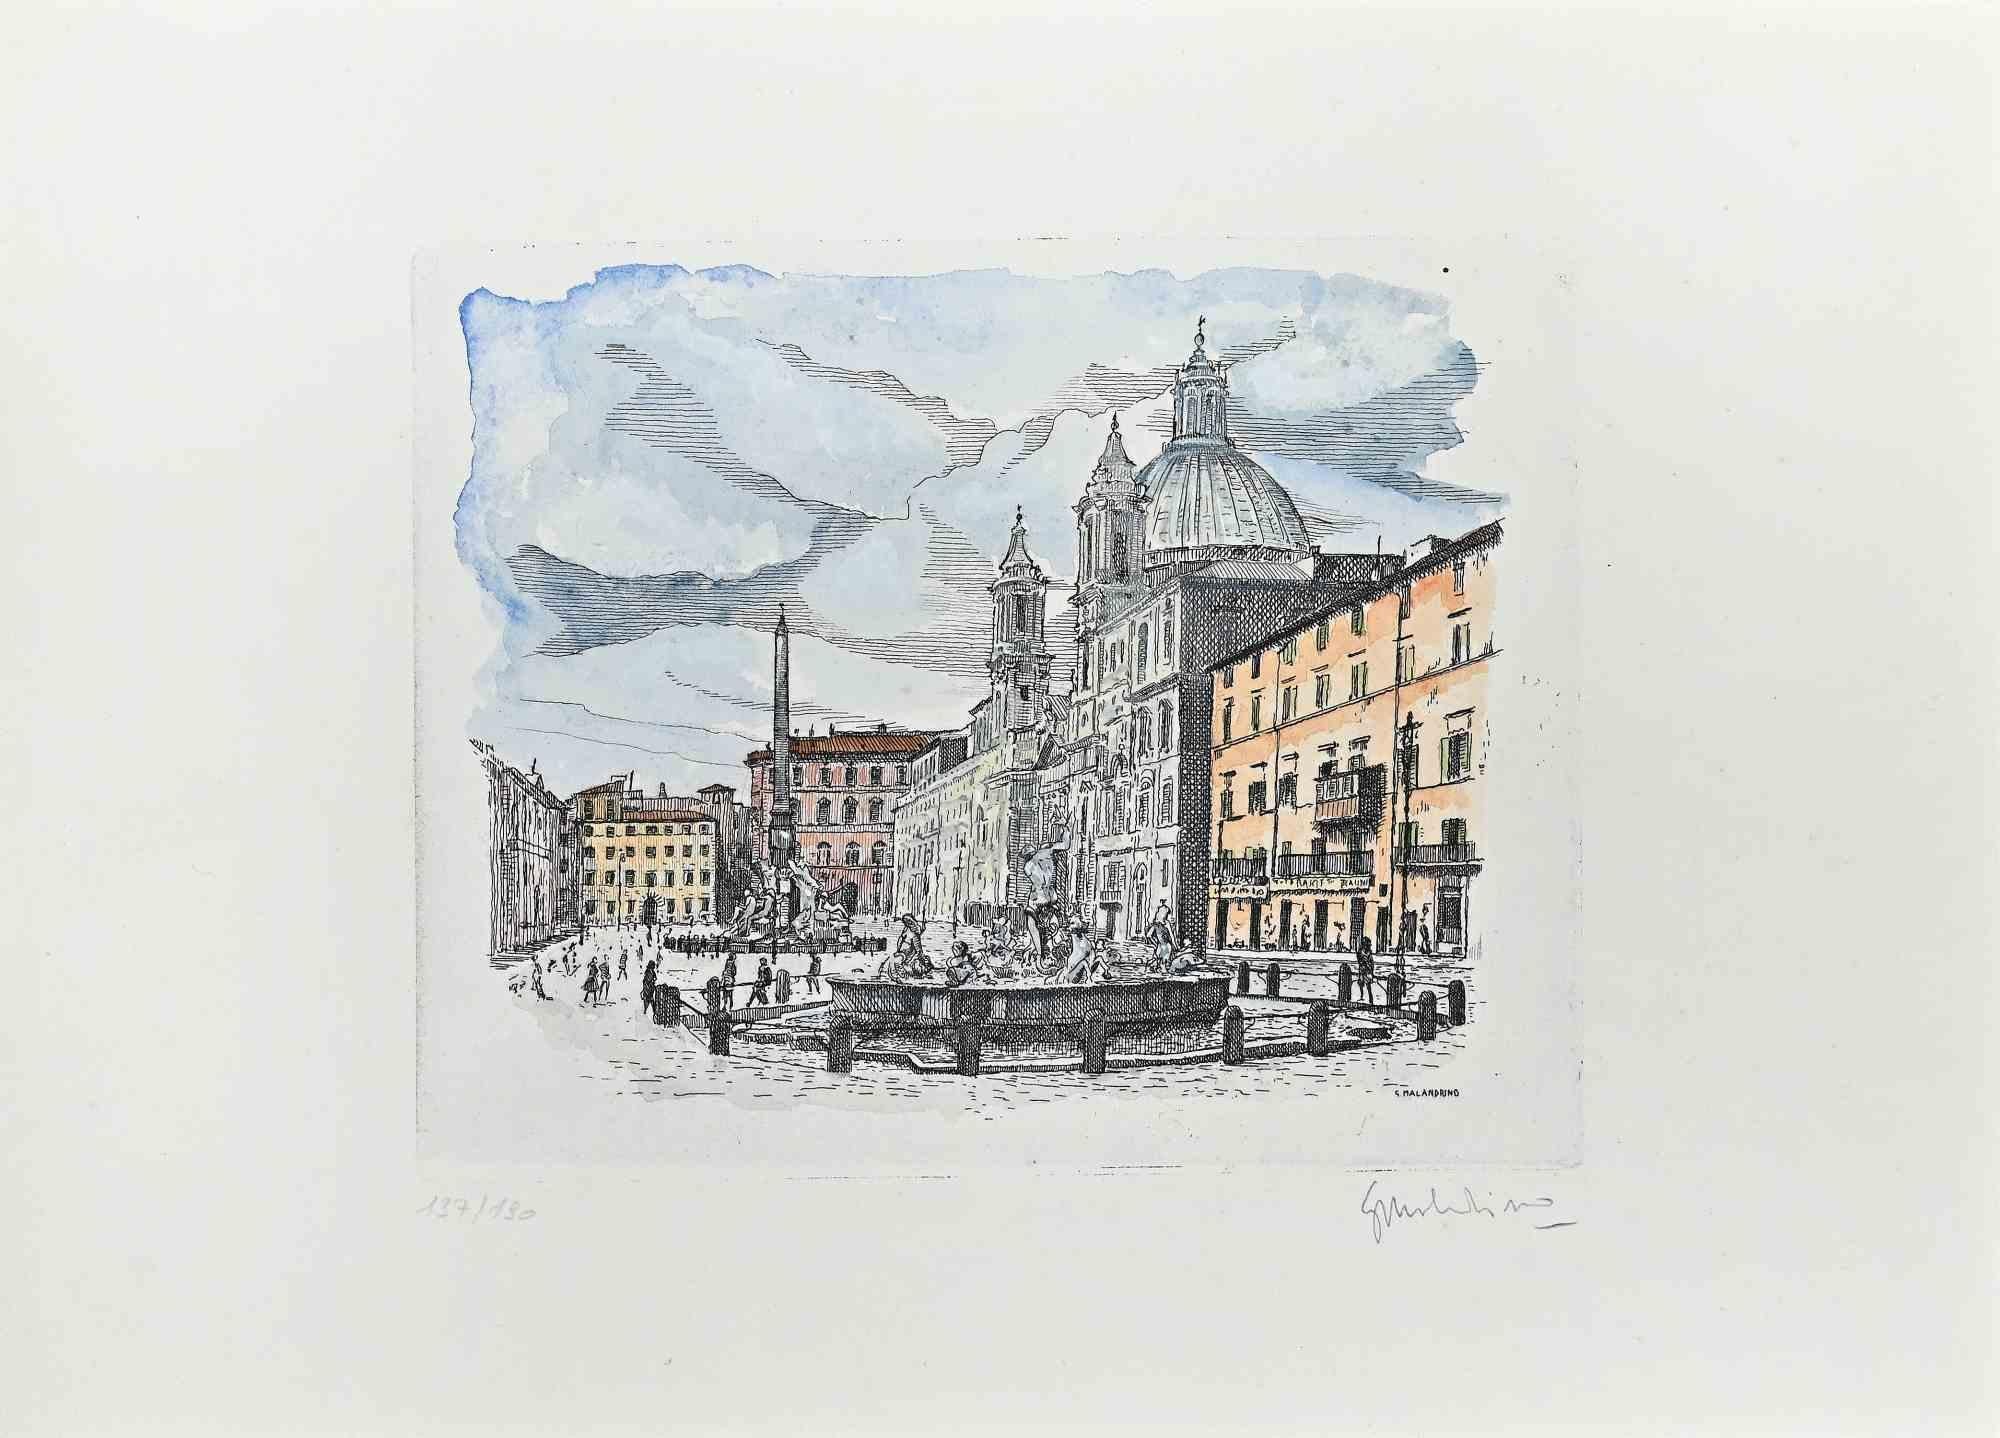 Navona Square ist ein Kunstwerk von Giuseppe Malandrino.

Druck in Ätztechnik.

Vom Künstler in der rechten unteren Ecke mit Bleistift handsigniert.

Nummerierte Auflage von 190 Exemplaren.

Guter Zustand. 

Dieses Kunstwerk stellt den schönen